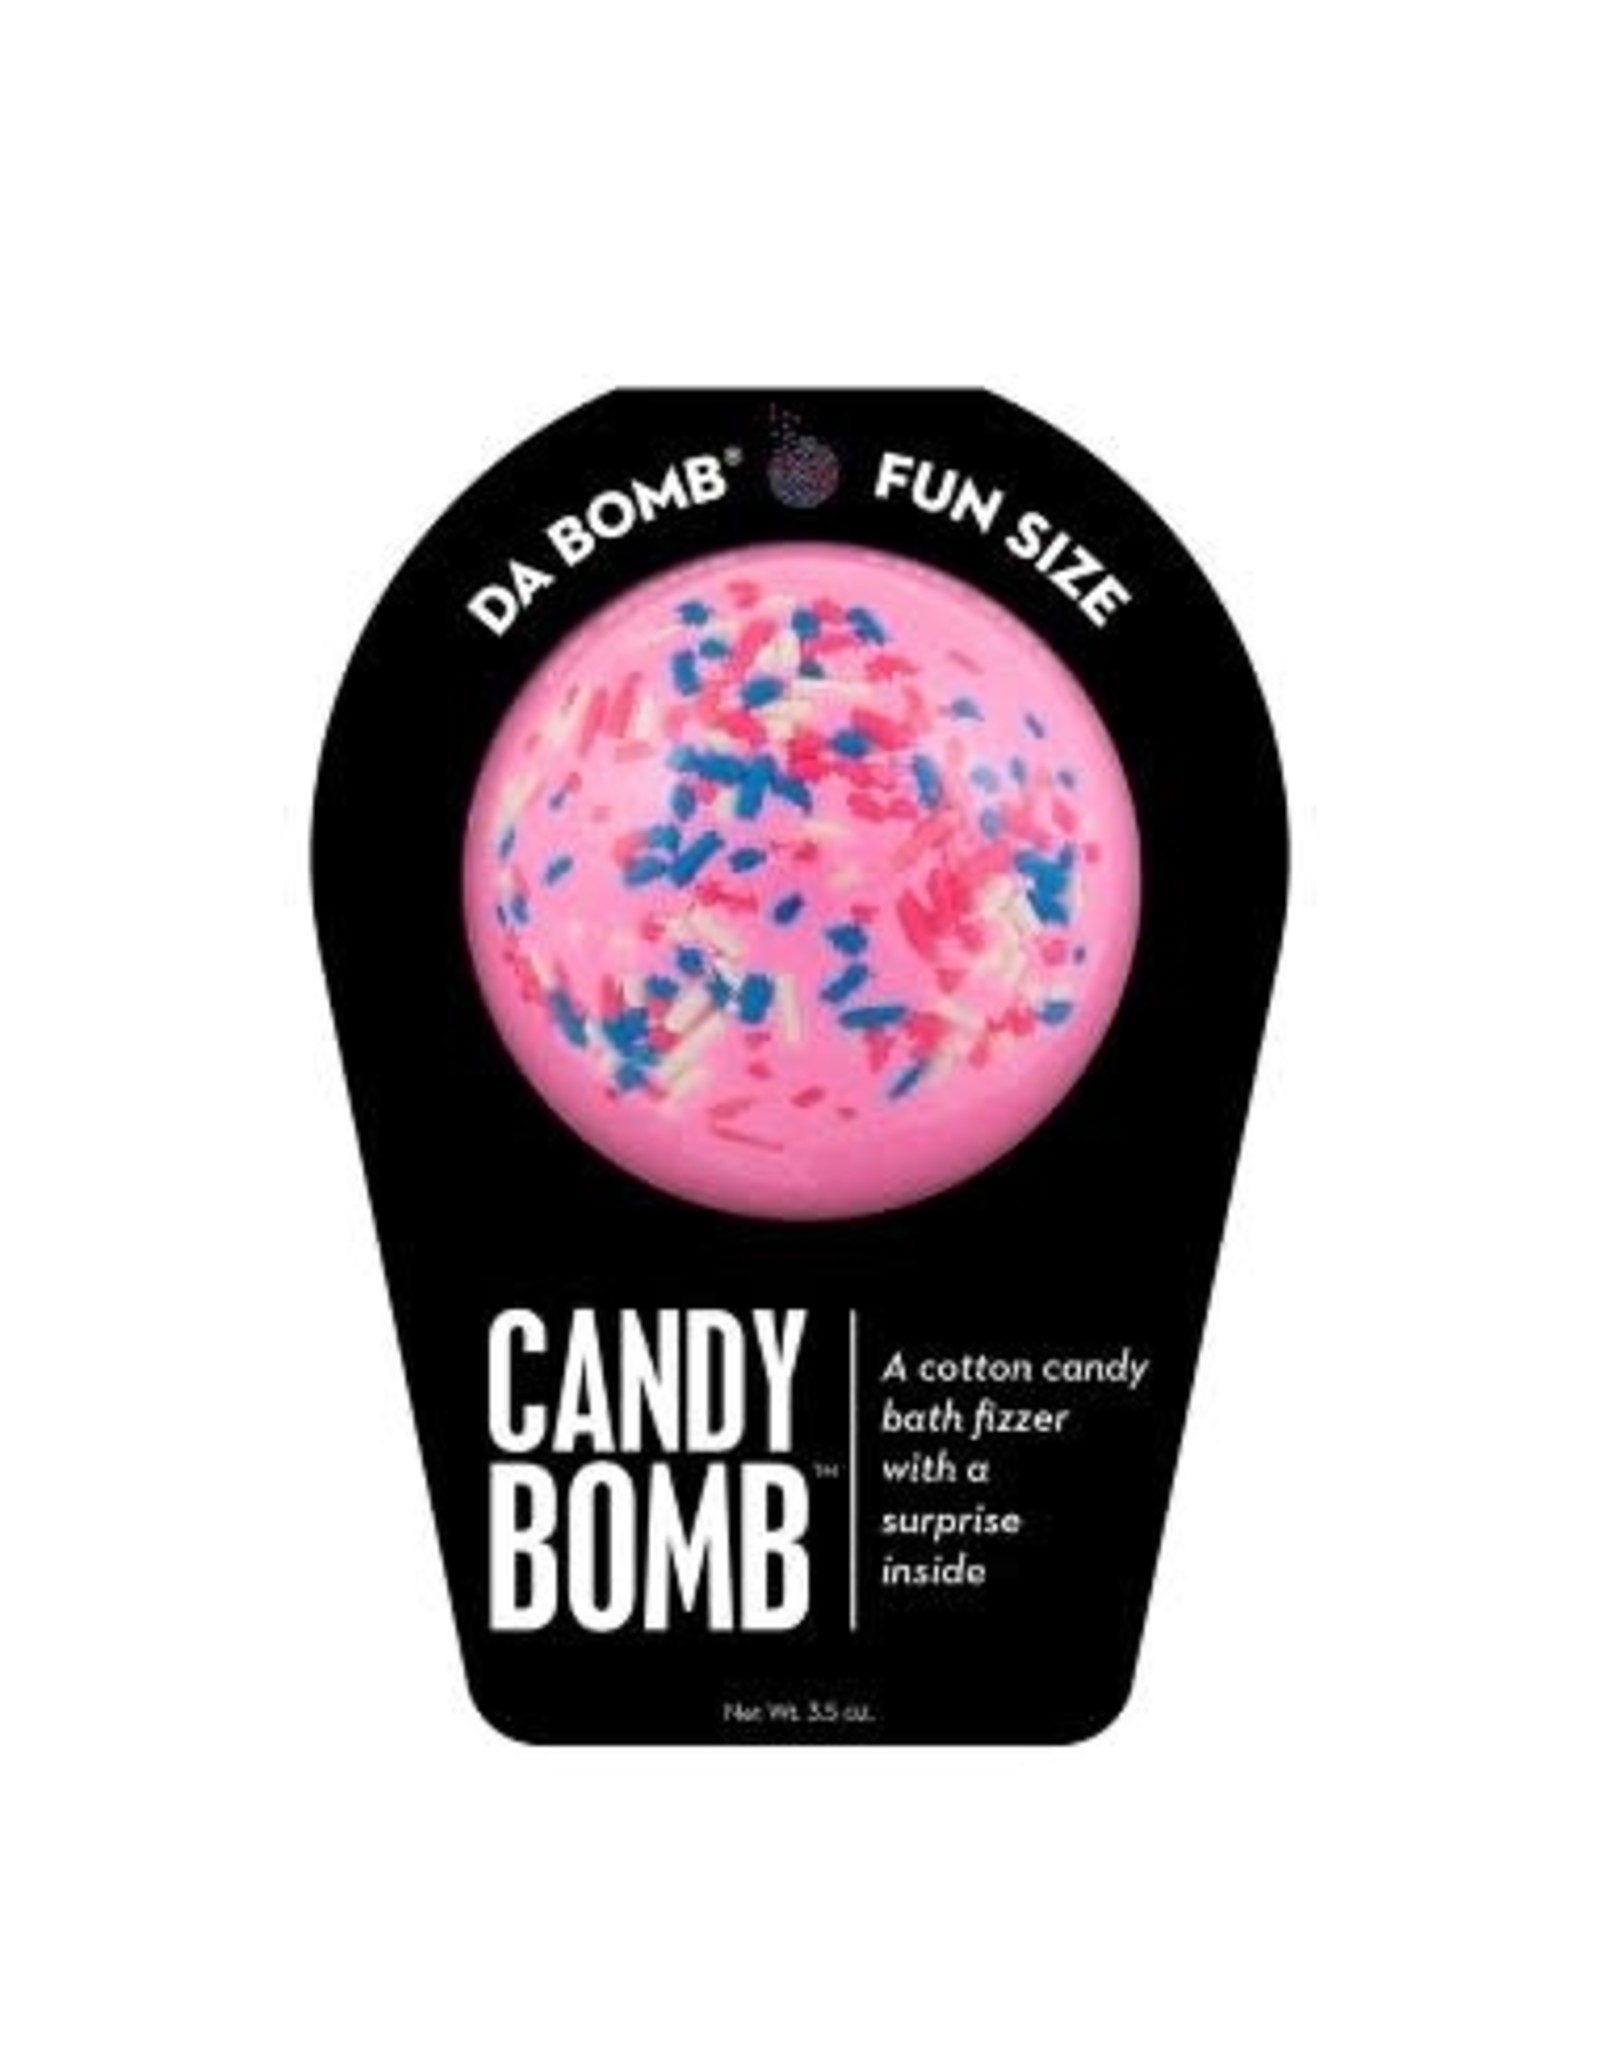 Da Bomb Candy Bath Bombs